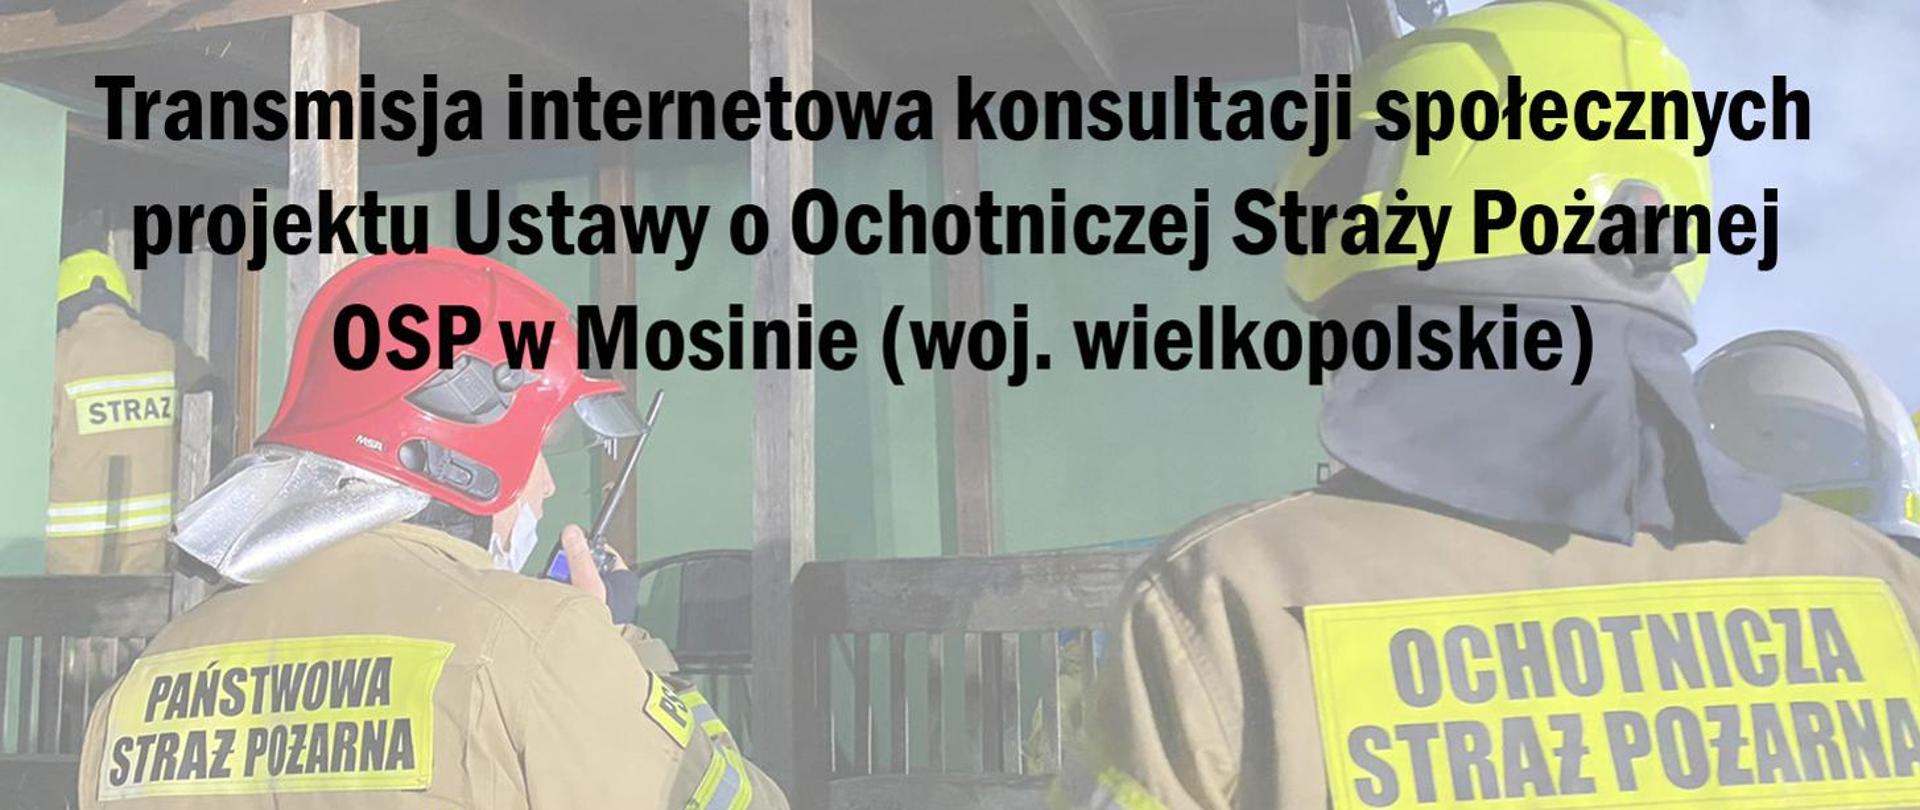 Zdjęcie przedstawia czarny napis "Transmisja internetowa konsultacji społecznych projektu Ustawy o Ochotniczej Straży Pożarnej" na tle strażaka PSP i OSP ubranych w ubrania specjalne i hełmy